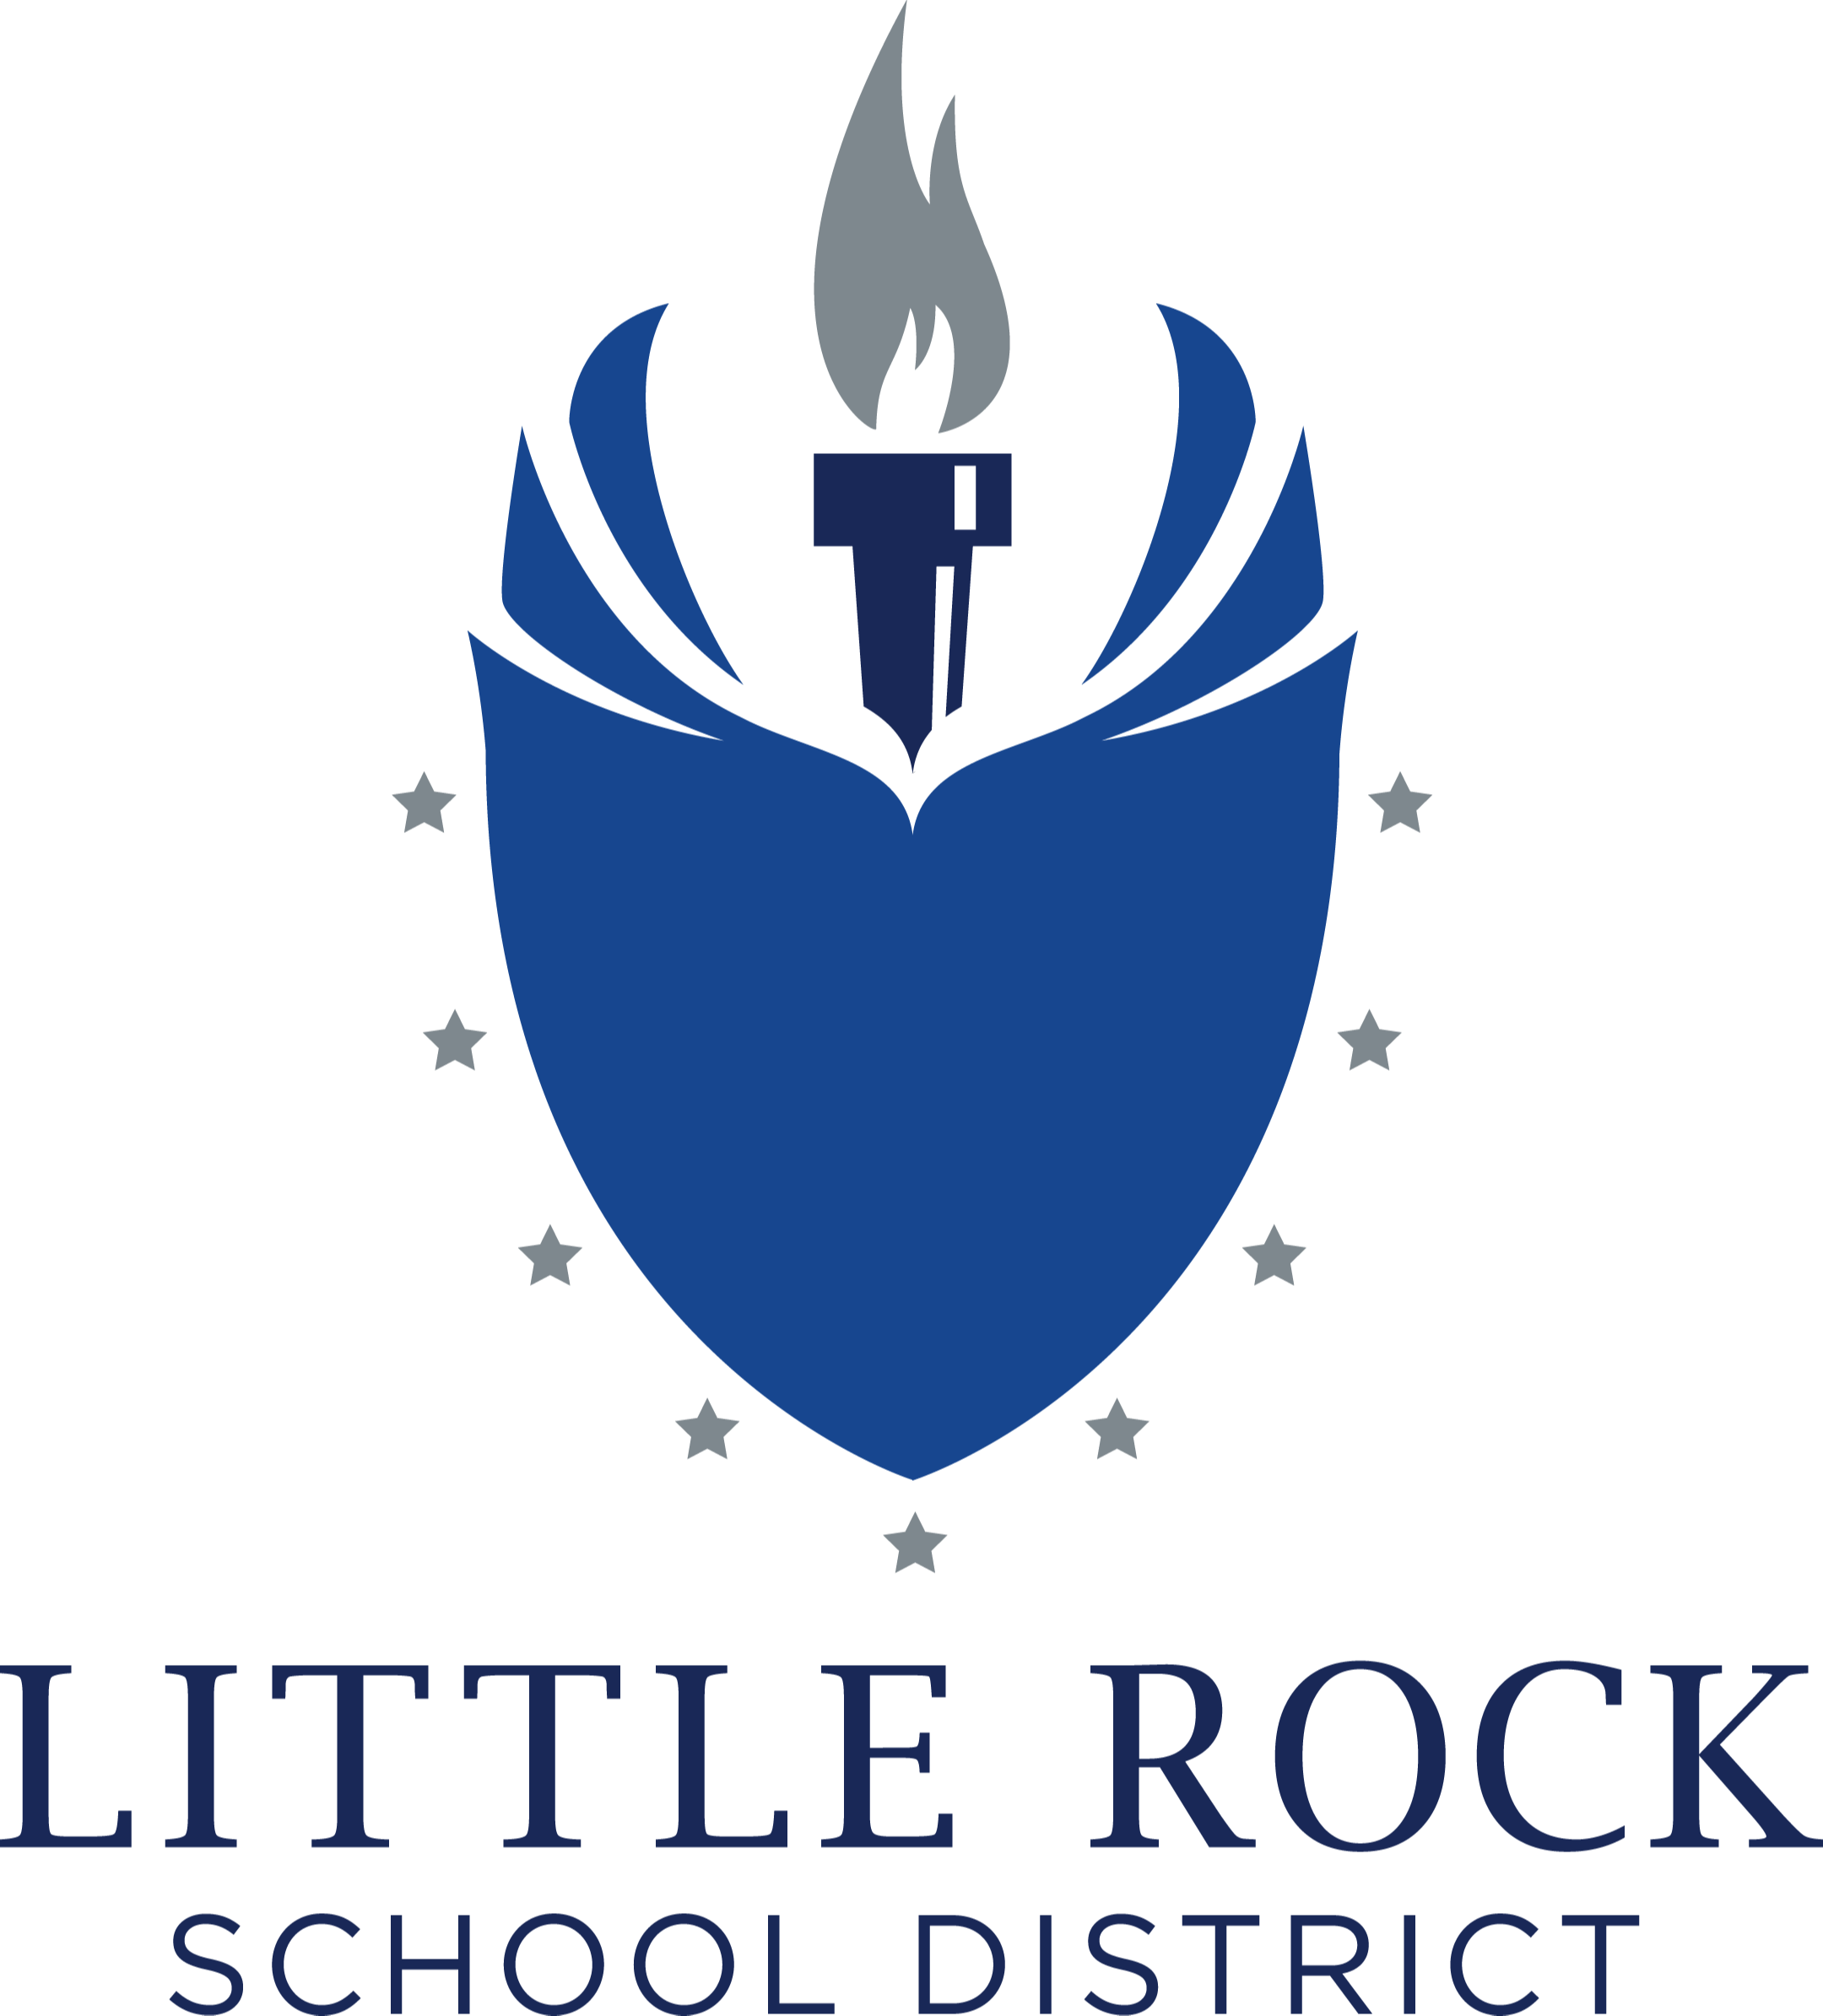 Little Rock School District